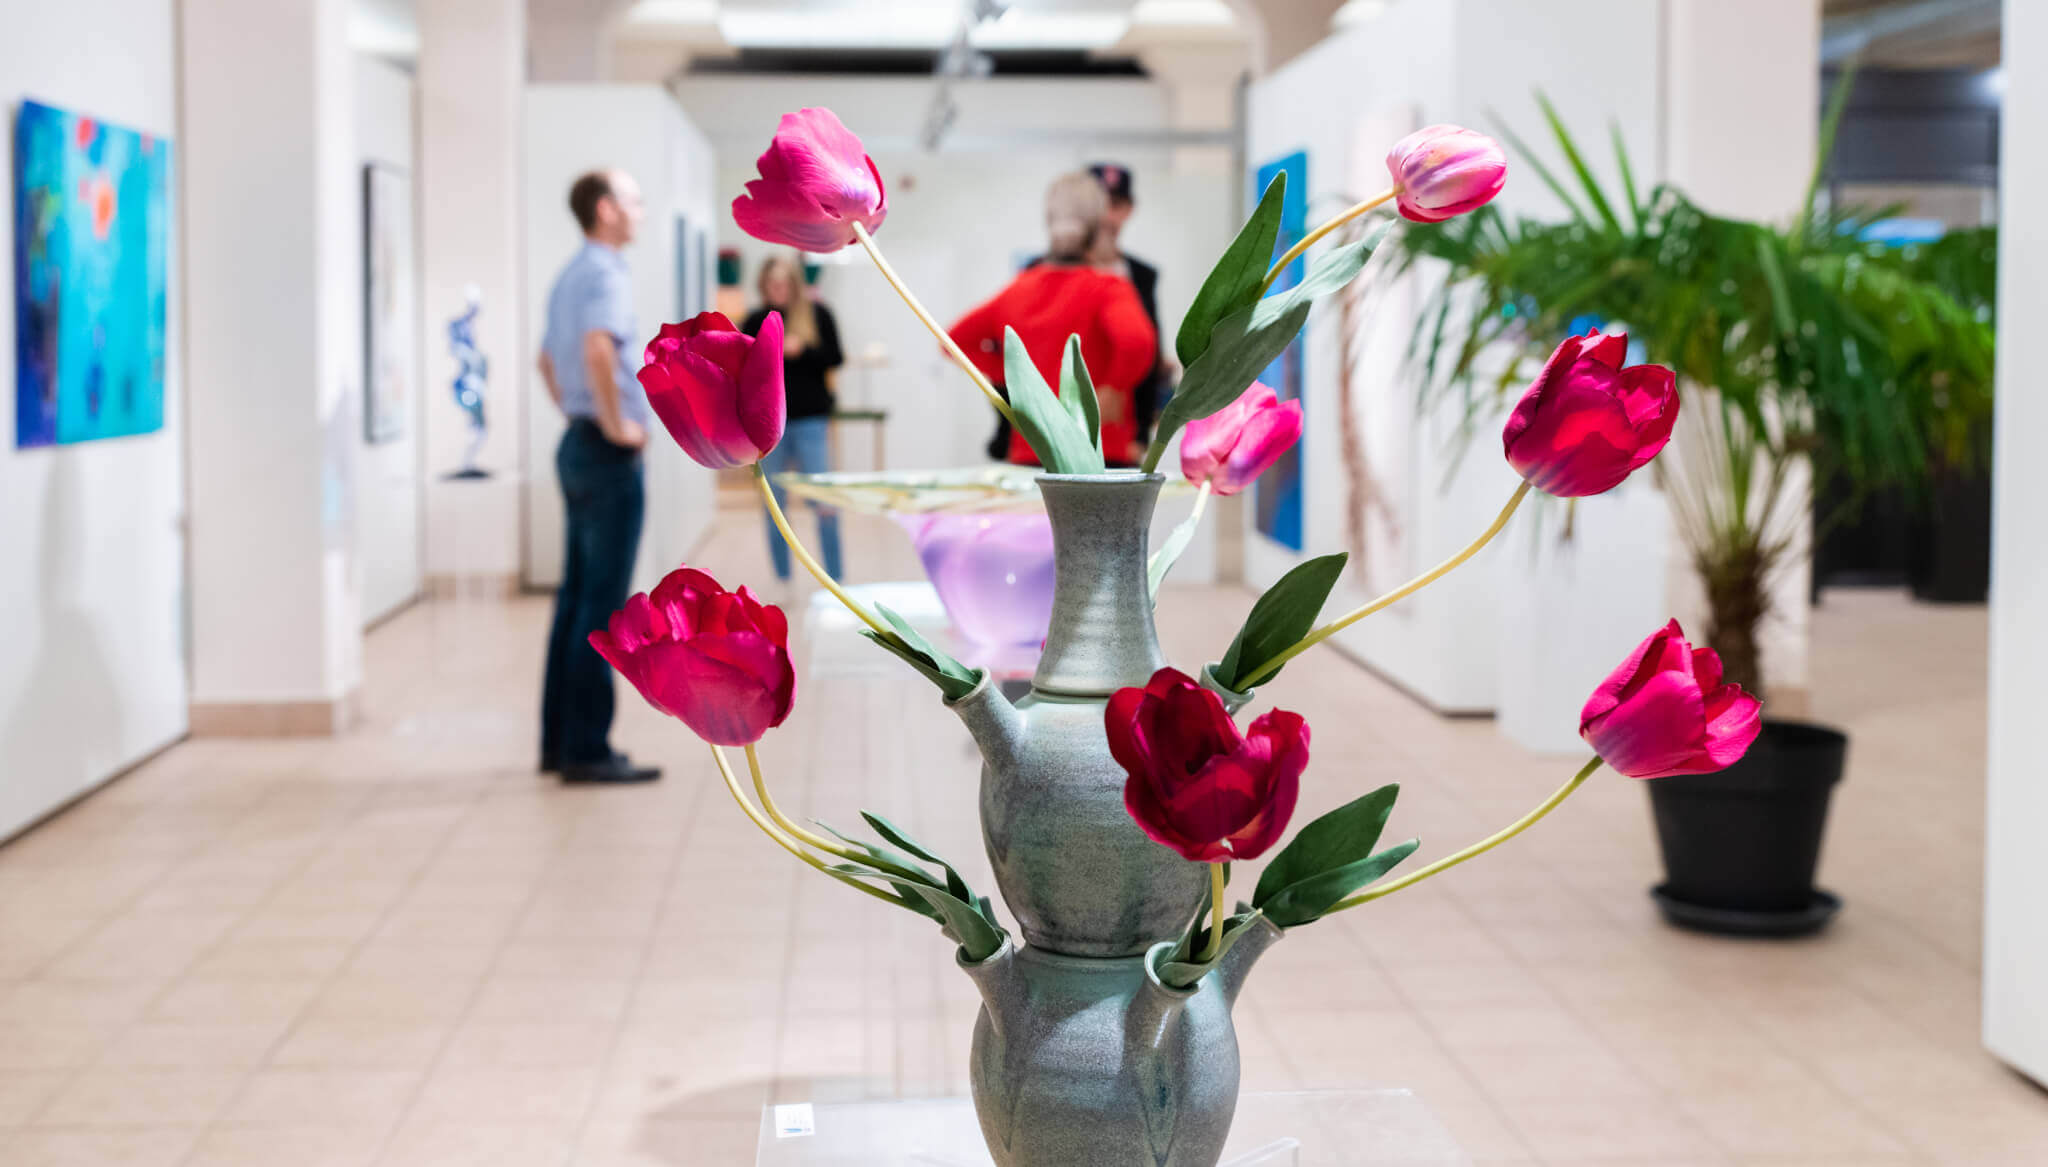 Meet the local in Aalsmeer: Constantijn from Flower Art Museum